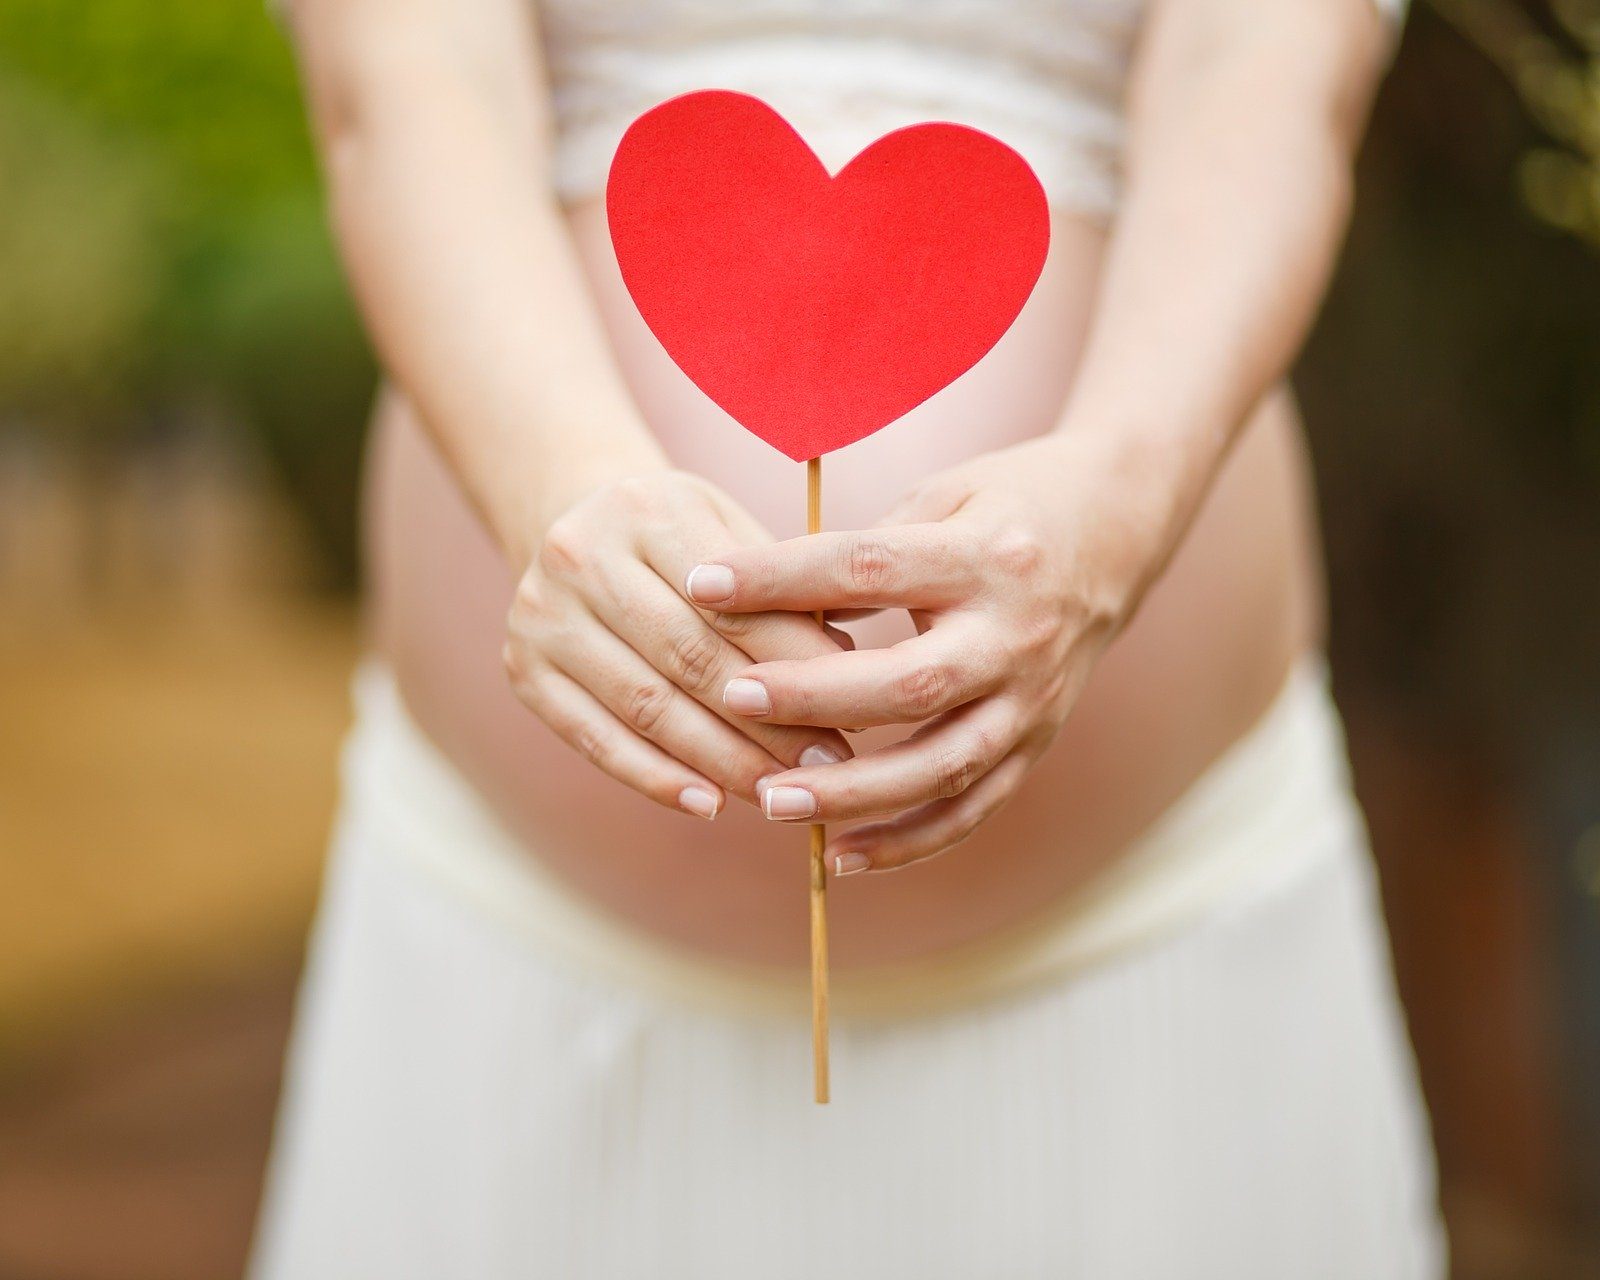 Foto per corso di maternità online: gravidanza e parto